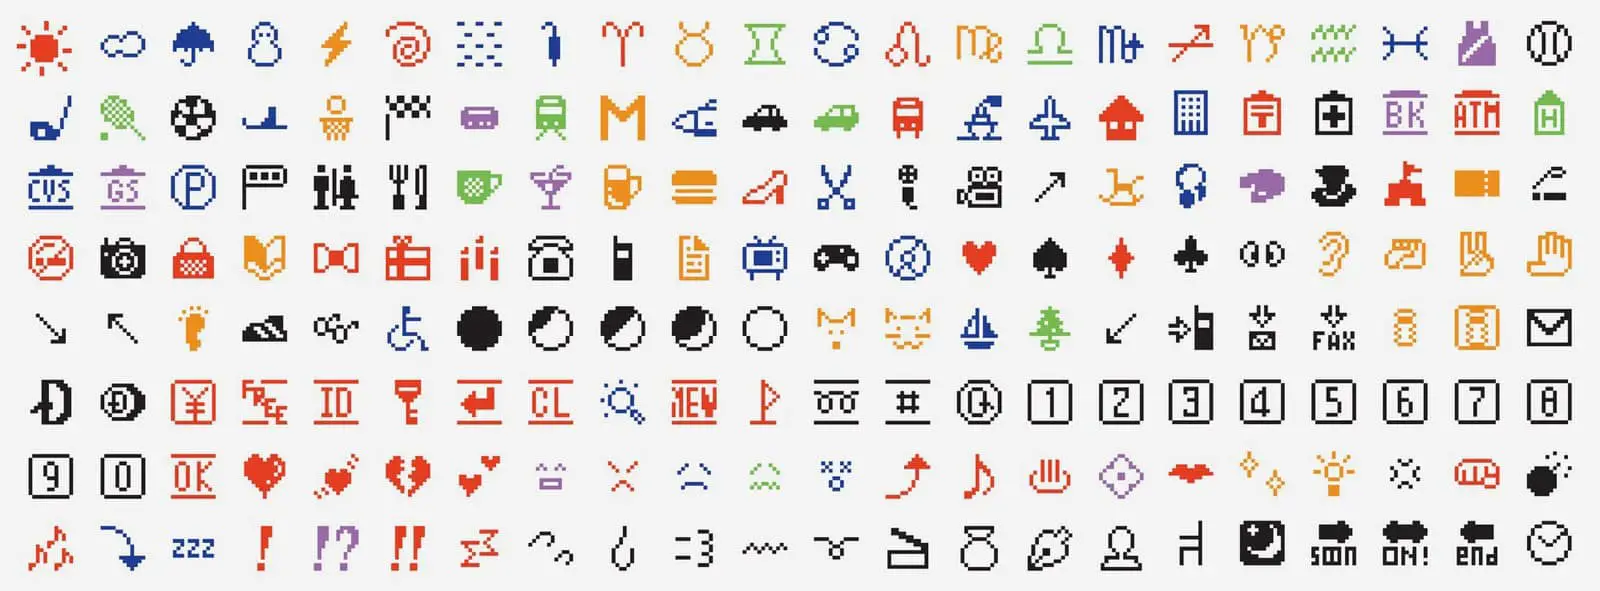 Bilder zum kopieren emoji 3300+ Emojis